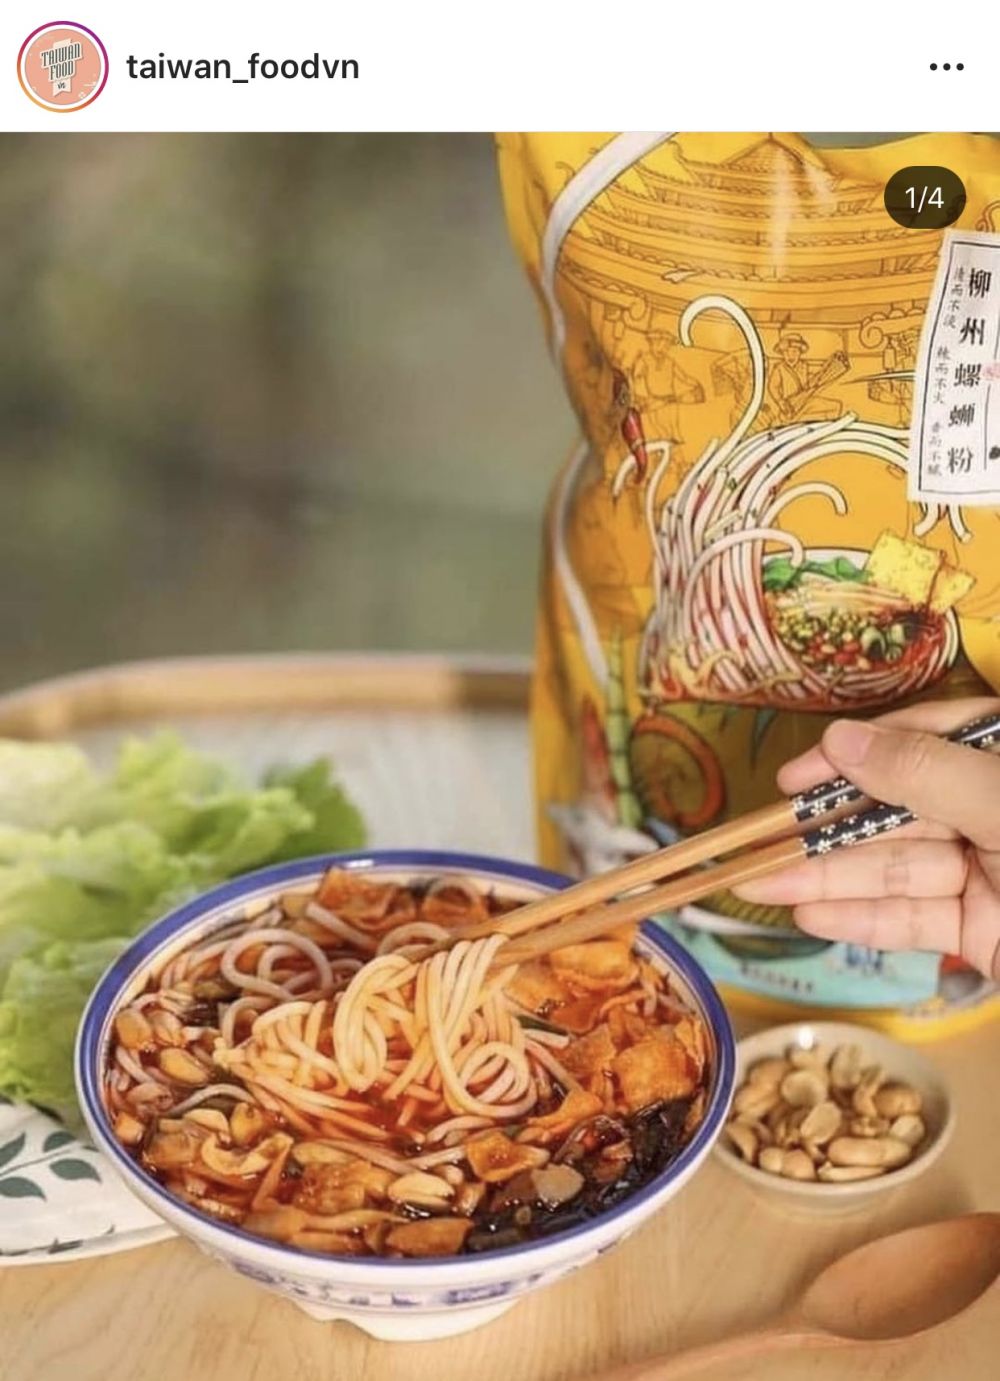 Sản phẩm bún ốc Liễu Châu được đăng bán trên trang Instagram của cửa hàng Taiwanfood tại Trần Hữu Tước, Đống Đa, Hà Nội. Ảnh: Diệu Hương